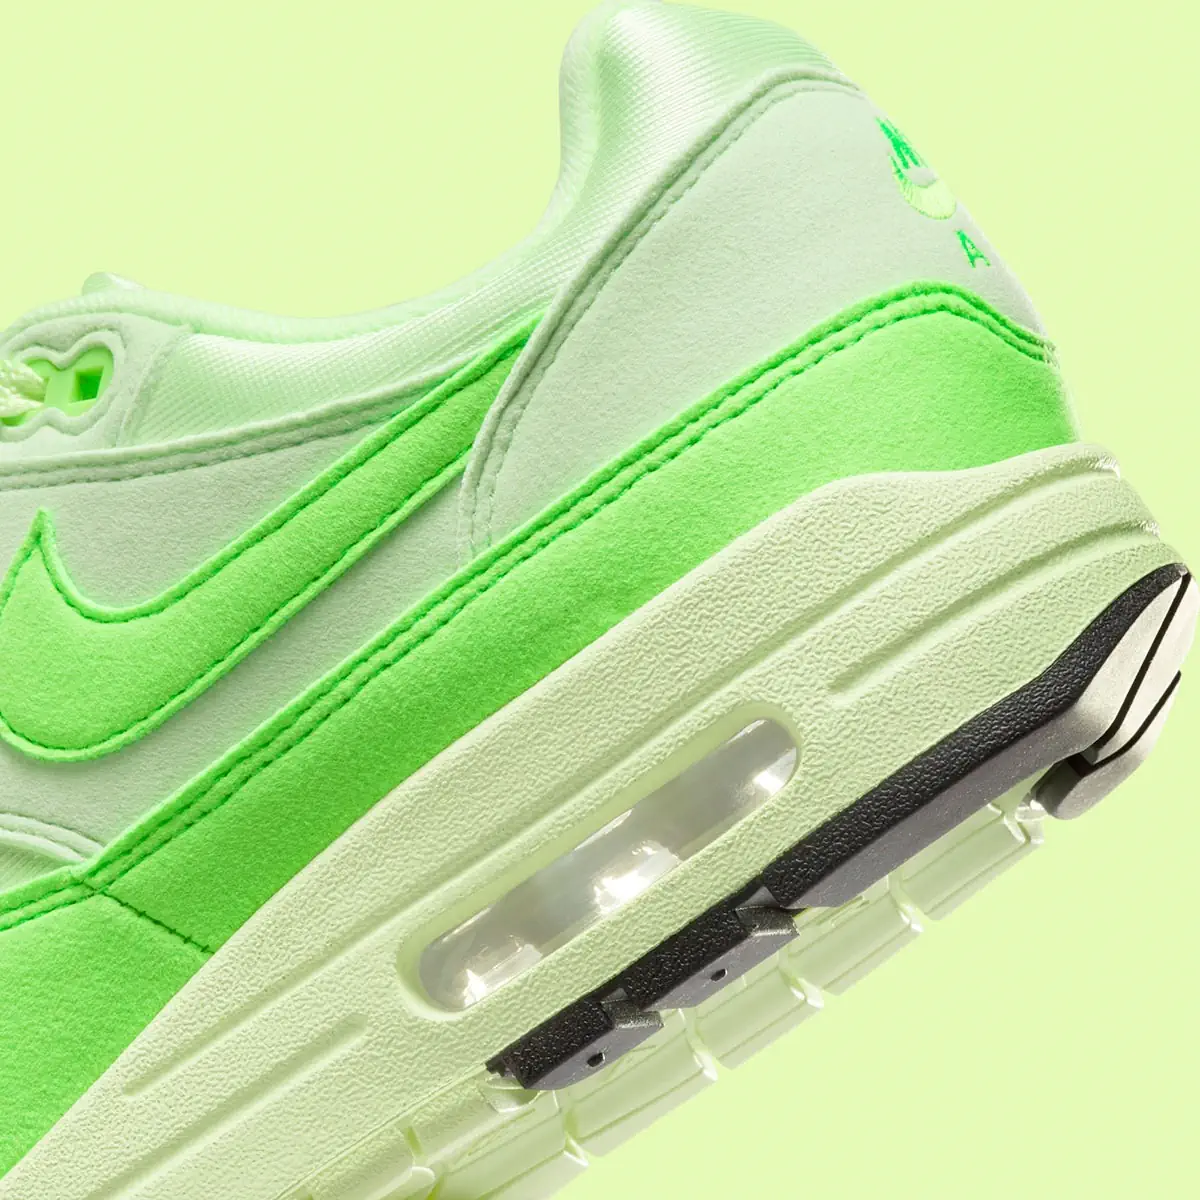 La Nike Air Max 1 “Vapor Green” se pare de néons pour l'automne